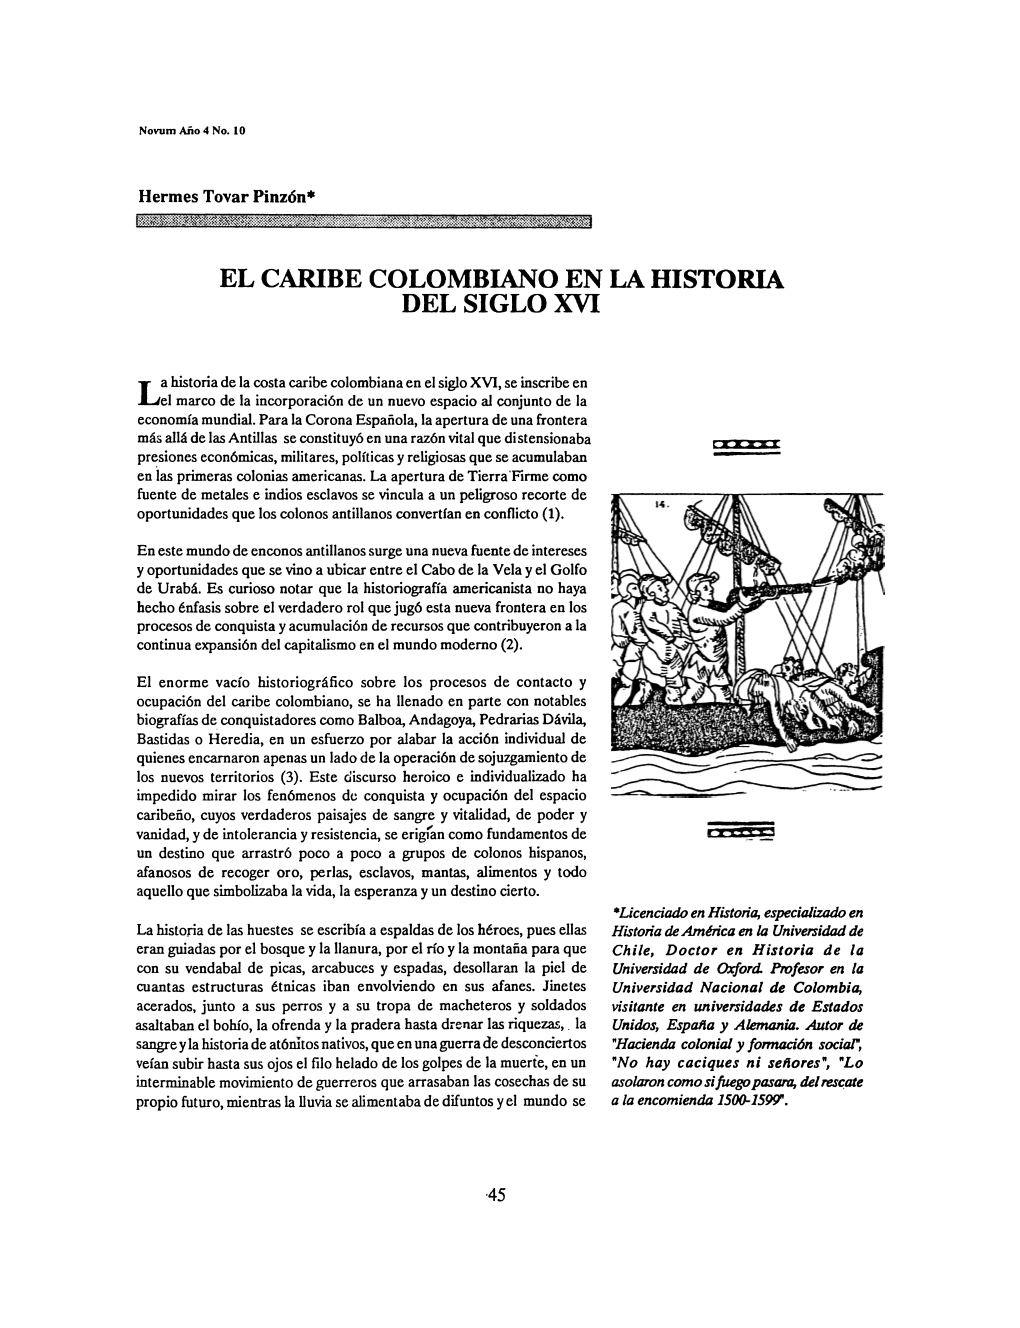 El Cambe Colombiano En La Historia Del Siglo Xvi